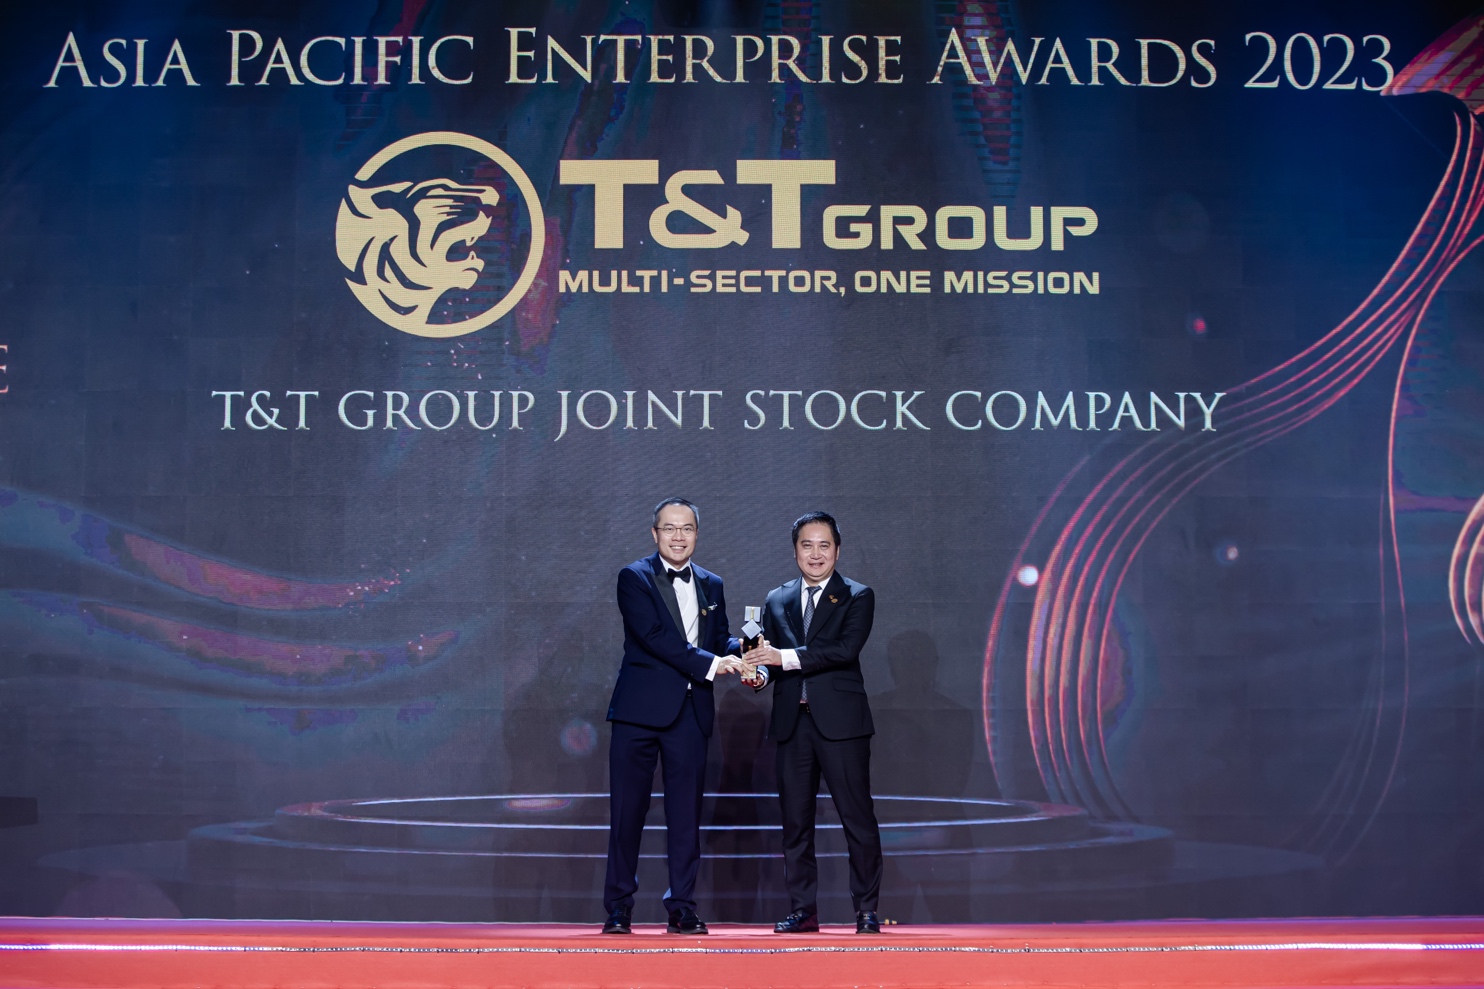 Phó Chủ tịch T&T Group Đỗ Vinh Quang nhận giải Doanh nhân xuất sắc châu Á 2023 ảnh 1